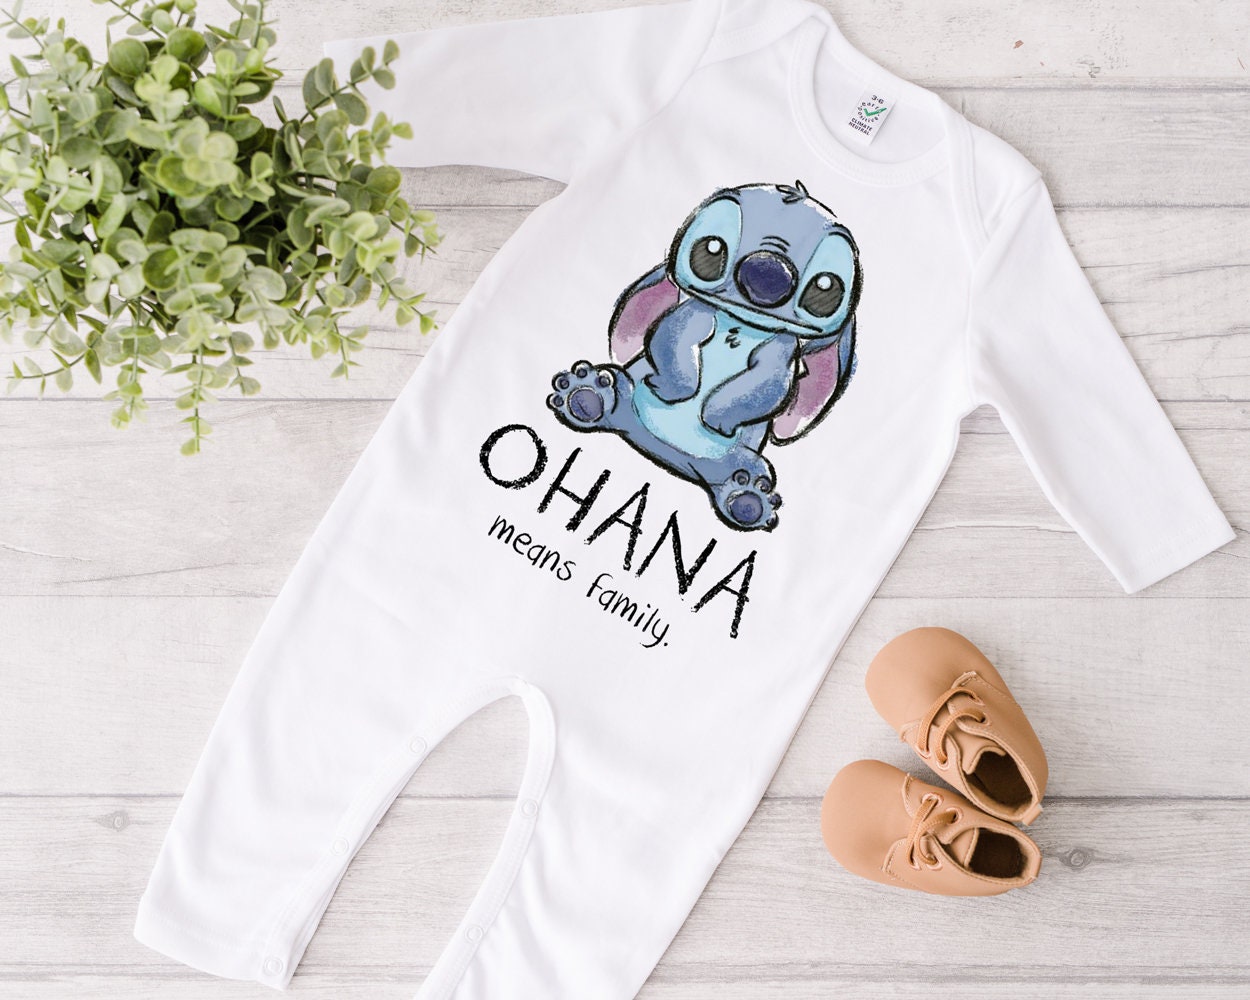 Pijama Stitch Niños Disfraz Stitch GENERICO